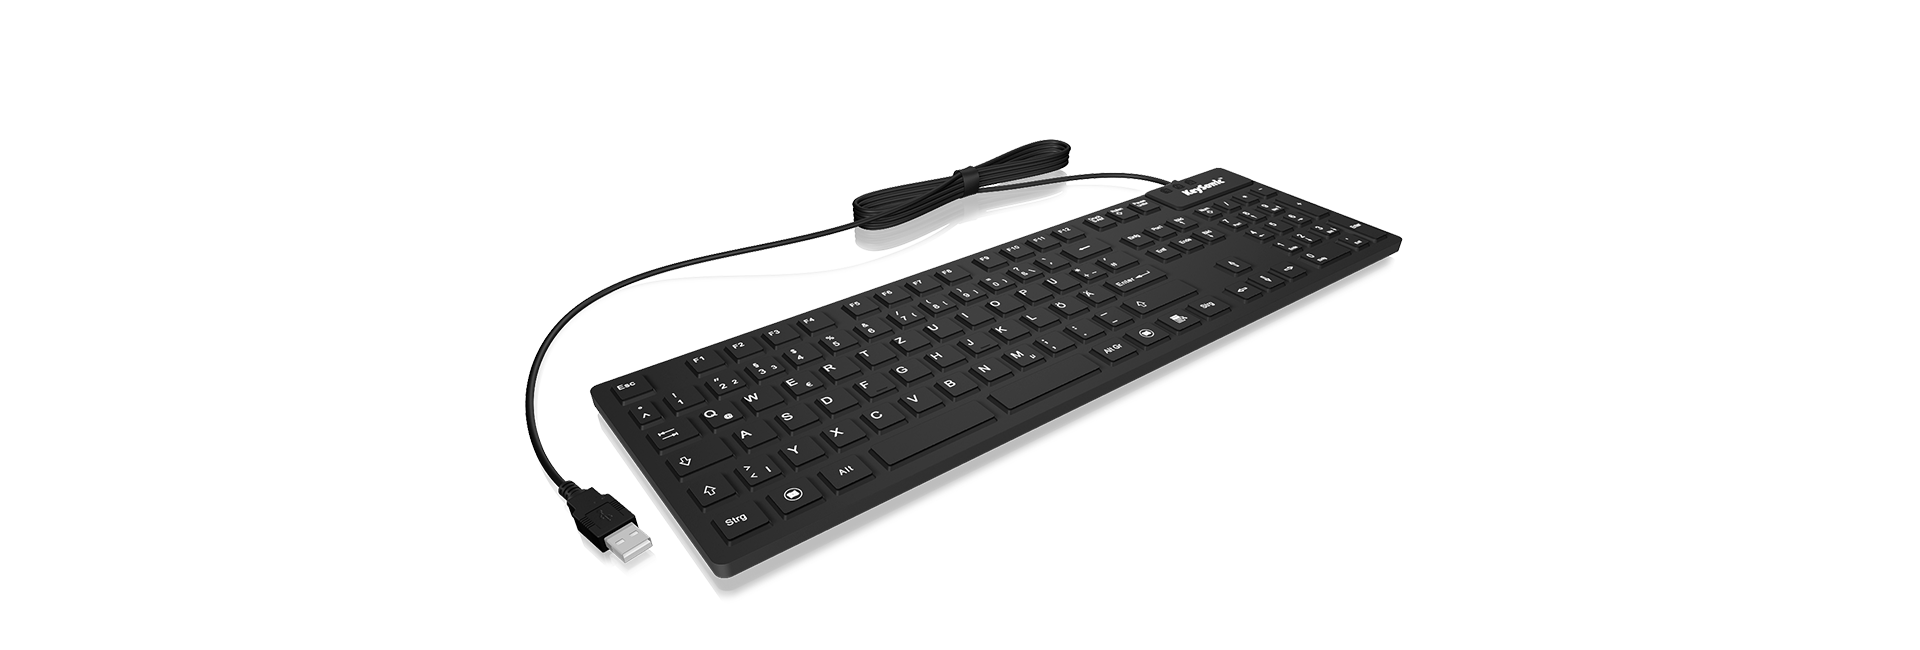 Keysonic KSK-8030 Waterproof Full Size Keyboard